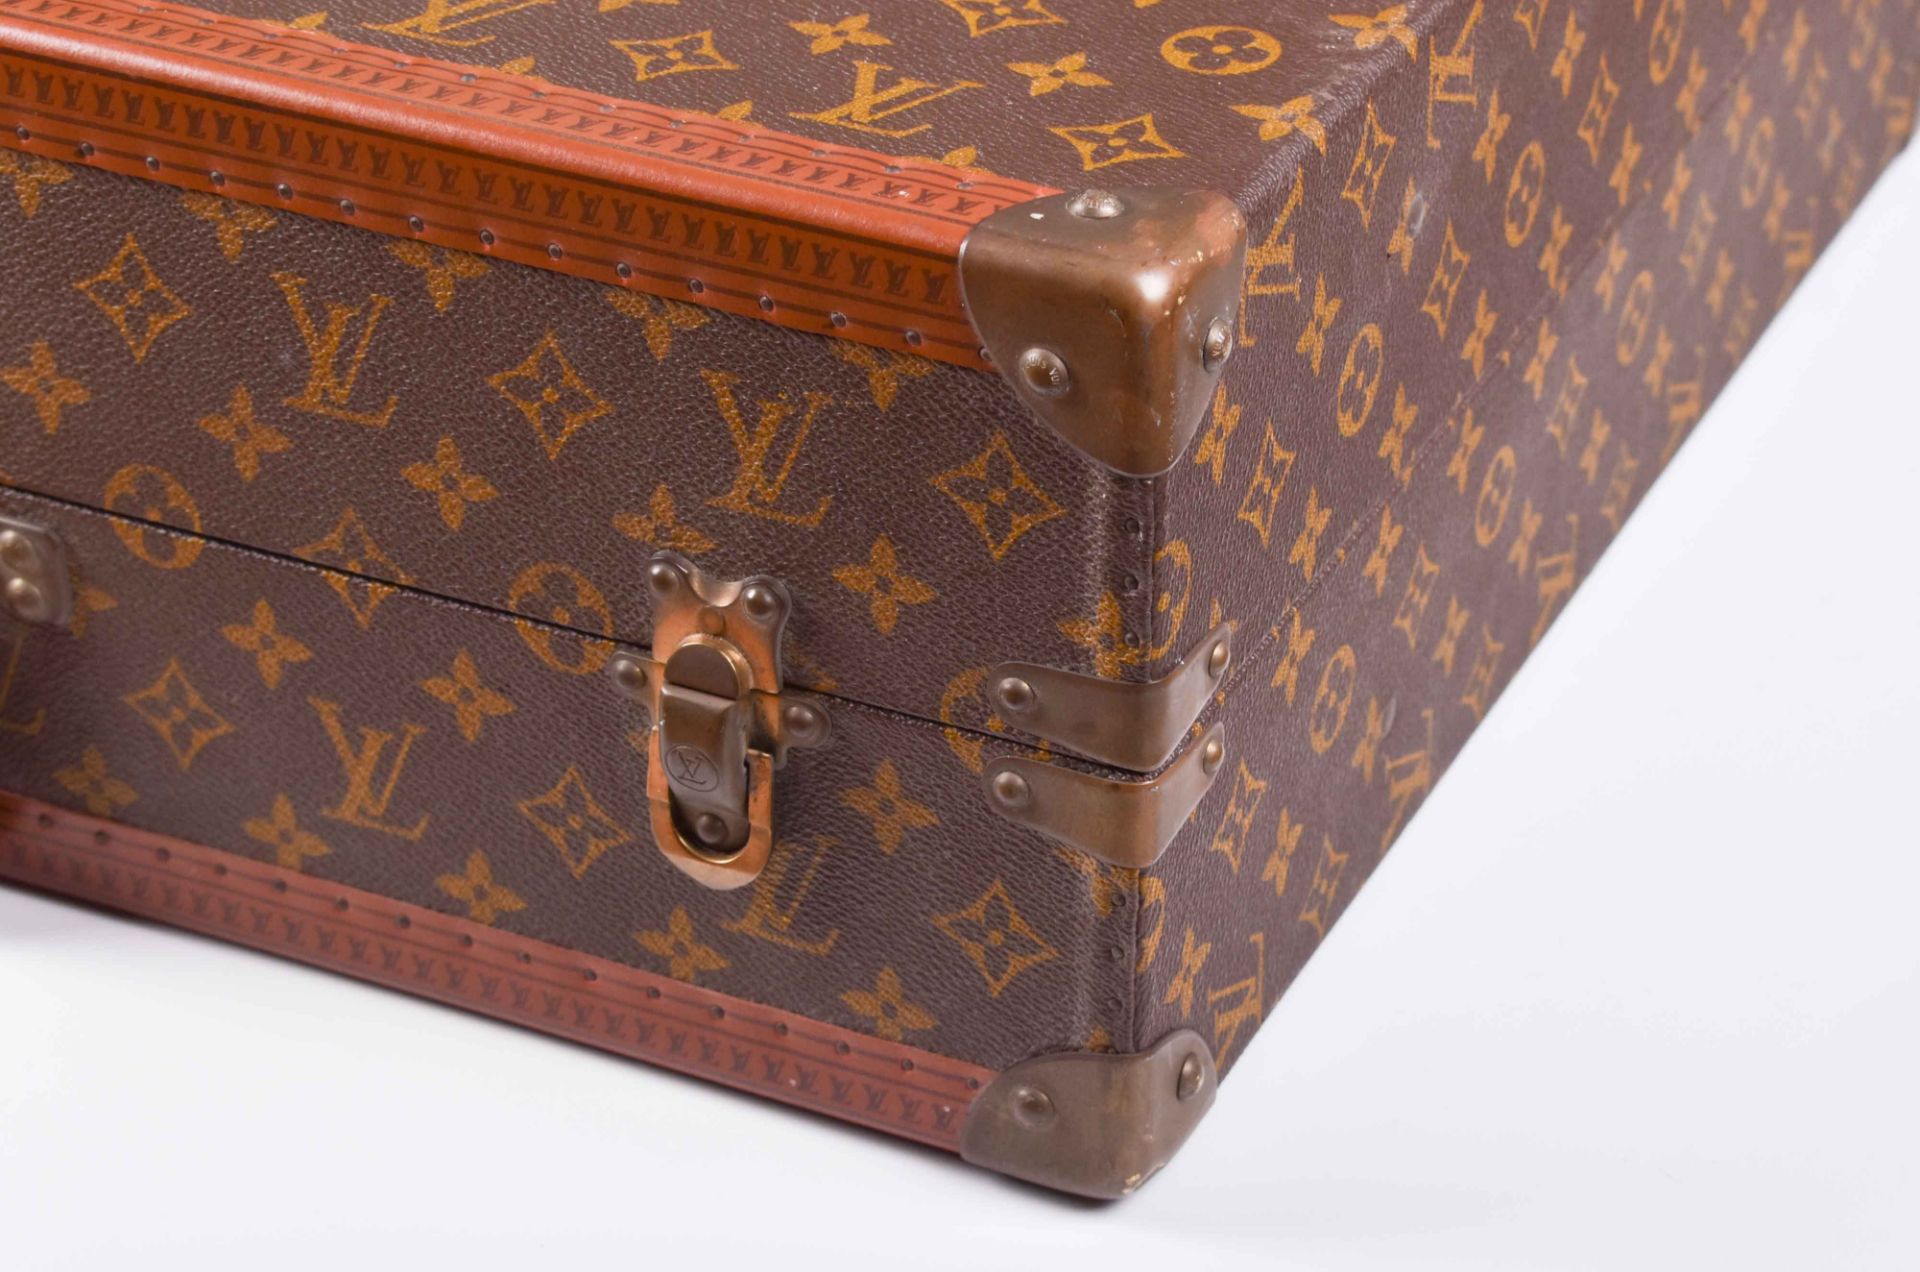  Louis Vuitton vintage suitcase 1950s / 1960s - Image 4 of 5